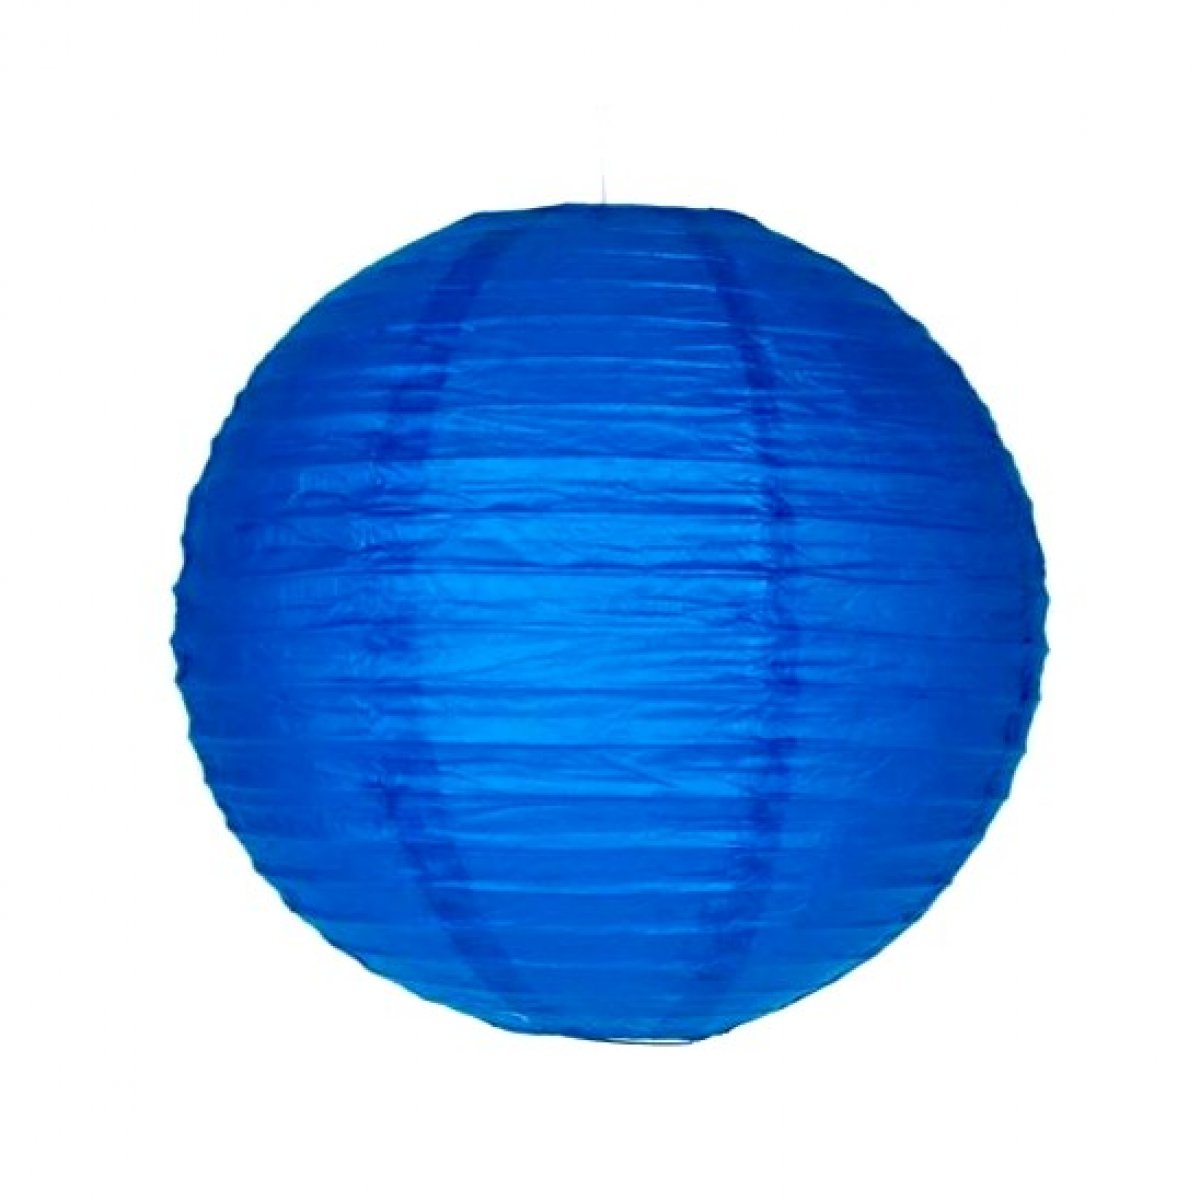 Lanterne en papier alvéolé royal bleu de 20 cm de diamètre